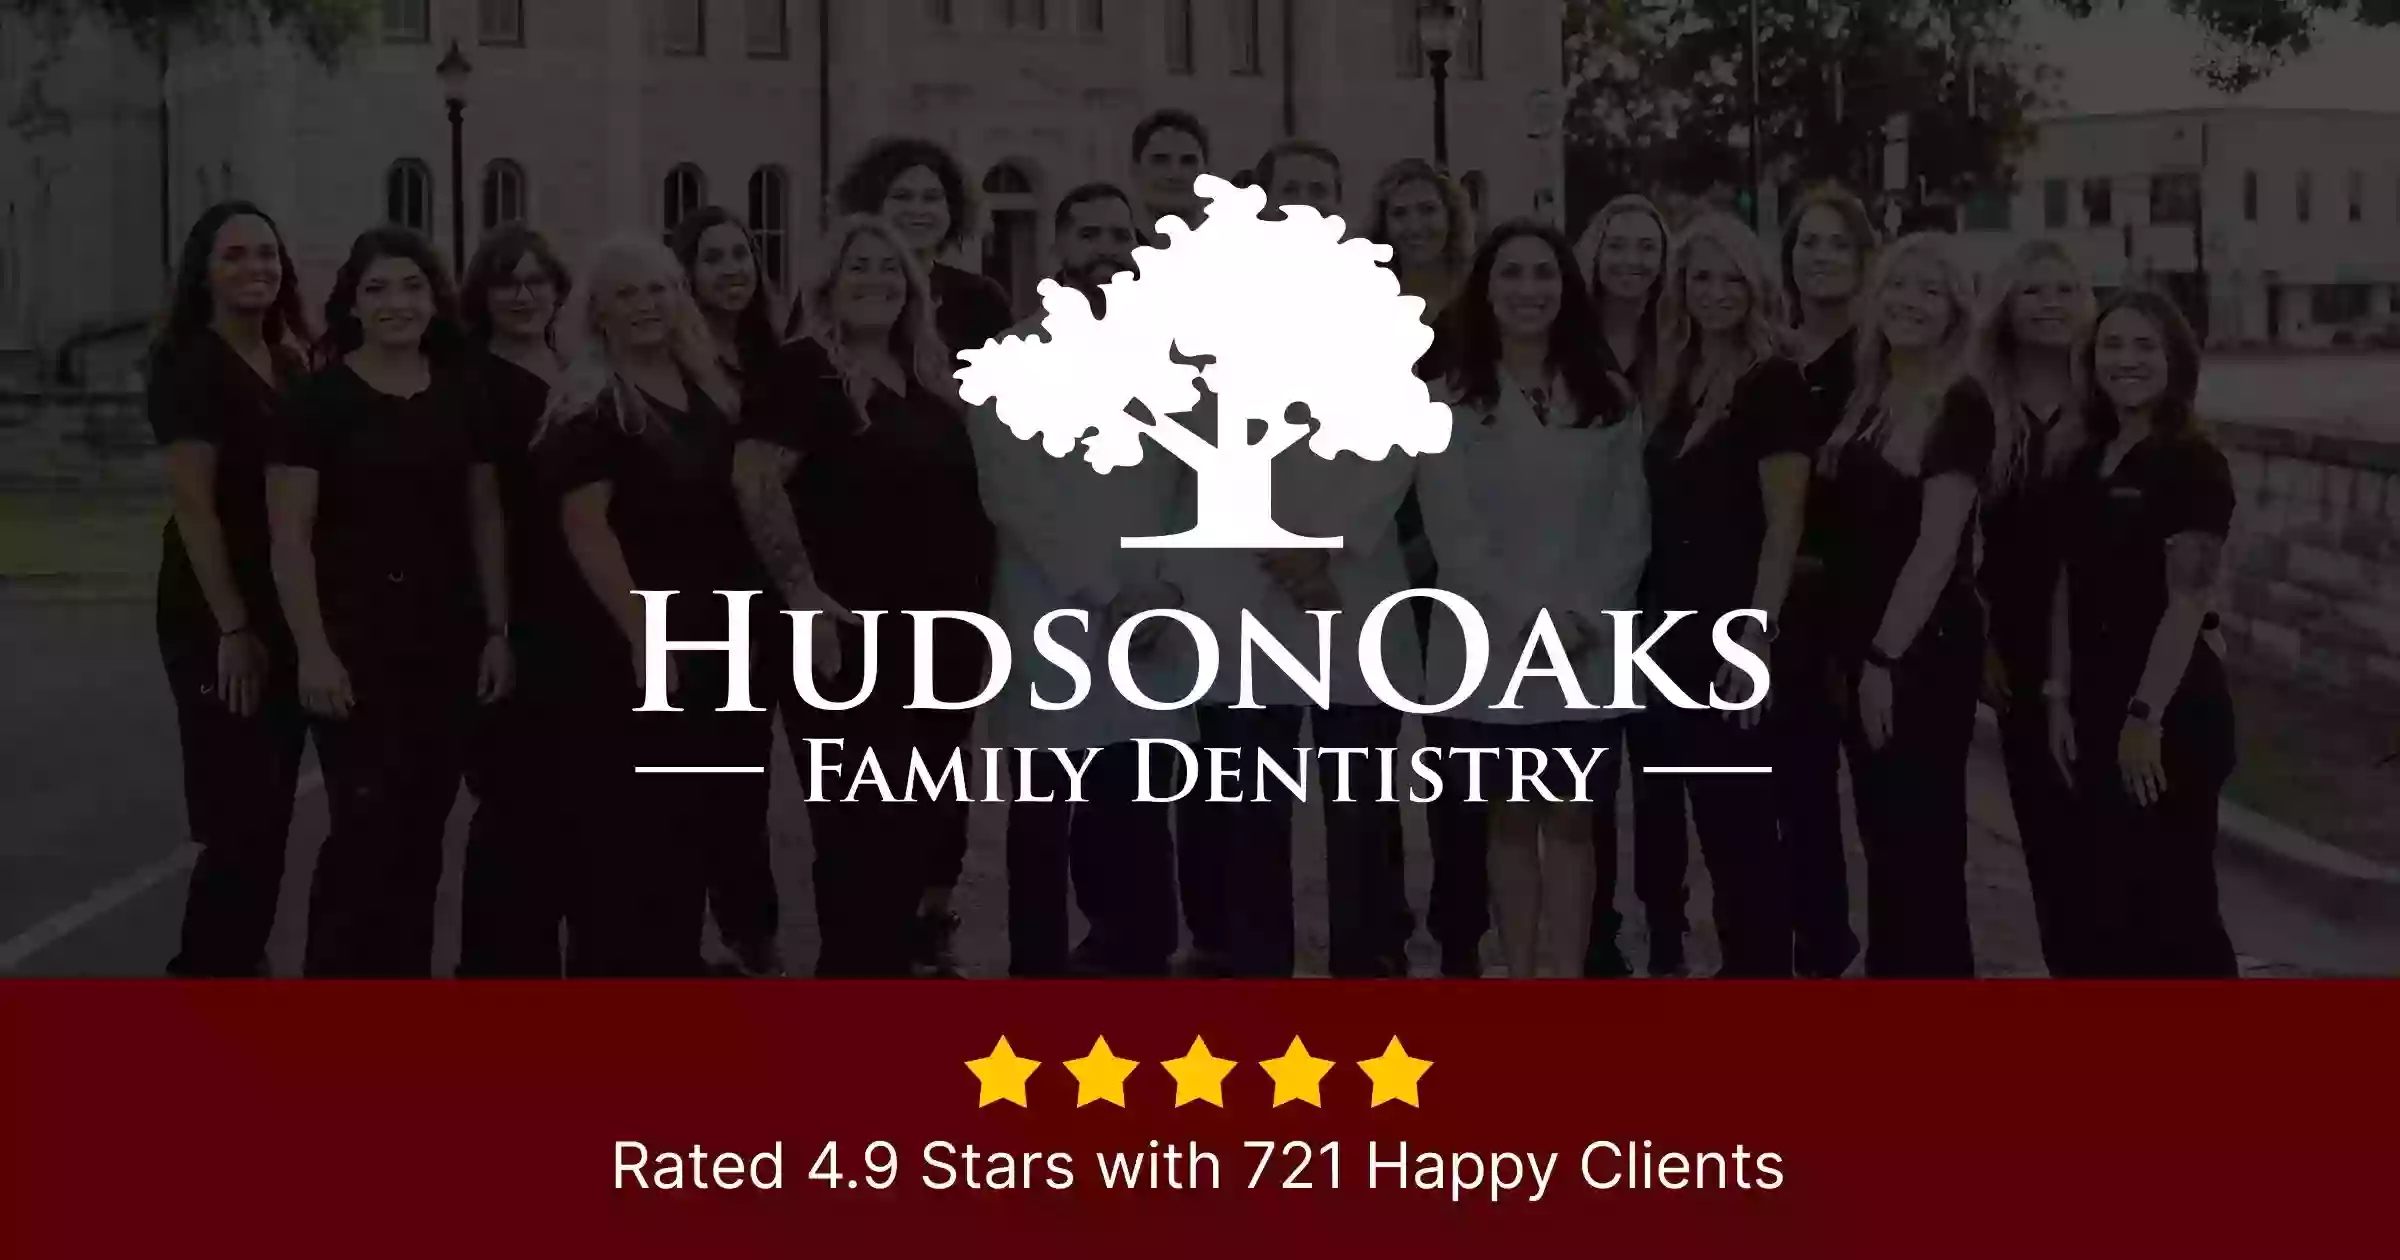 Hudson Oaks Family Dentistry